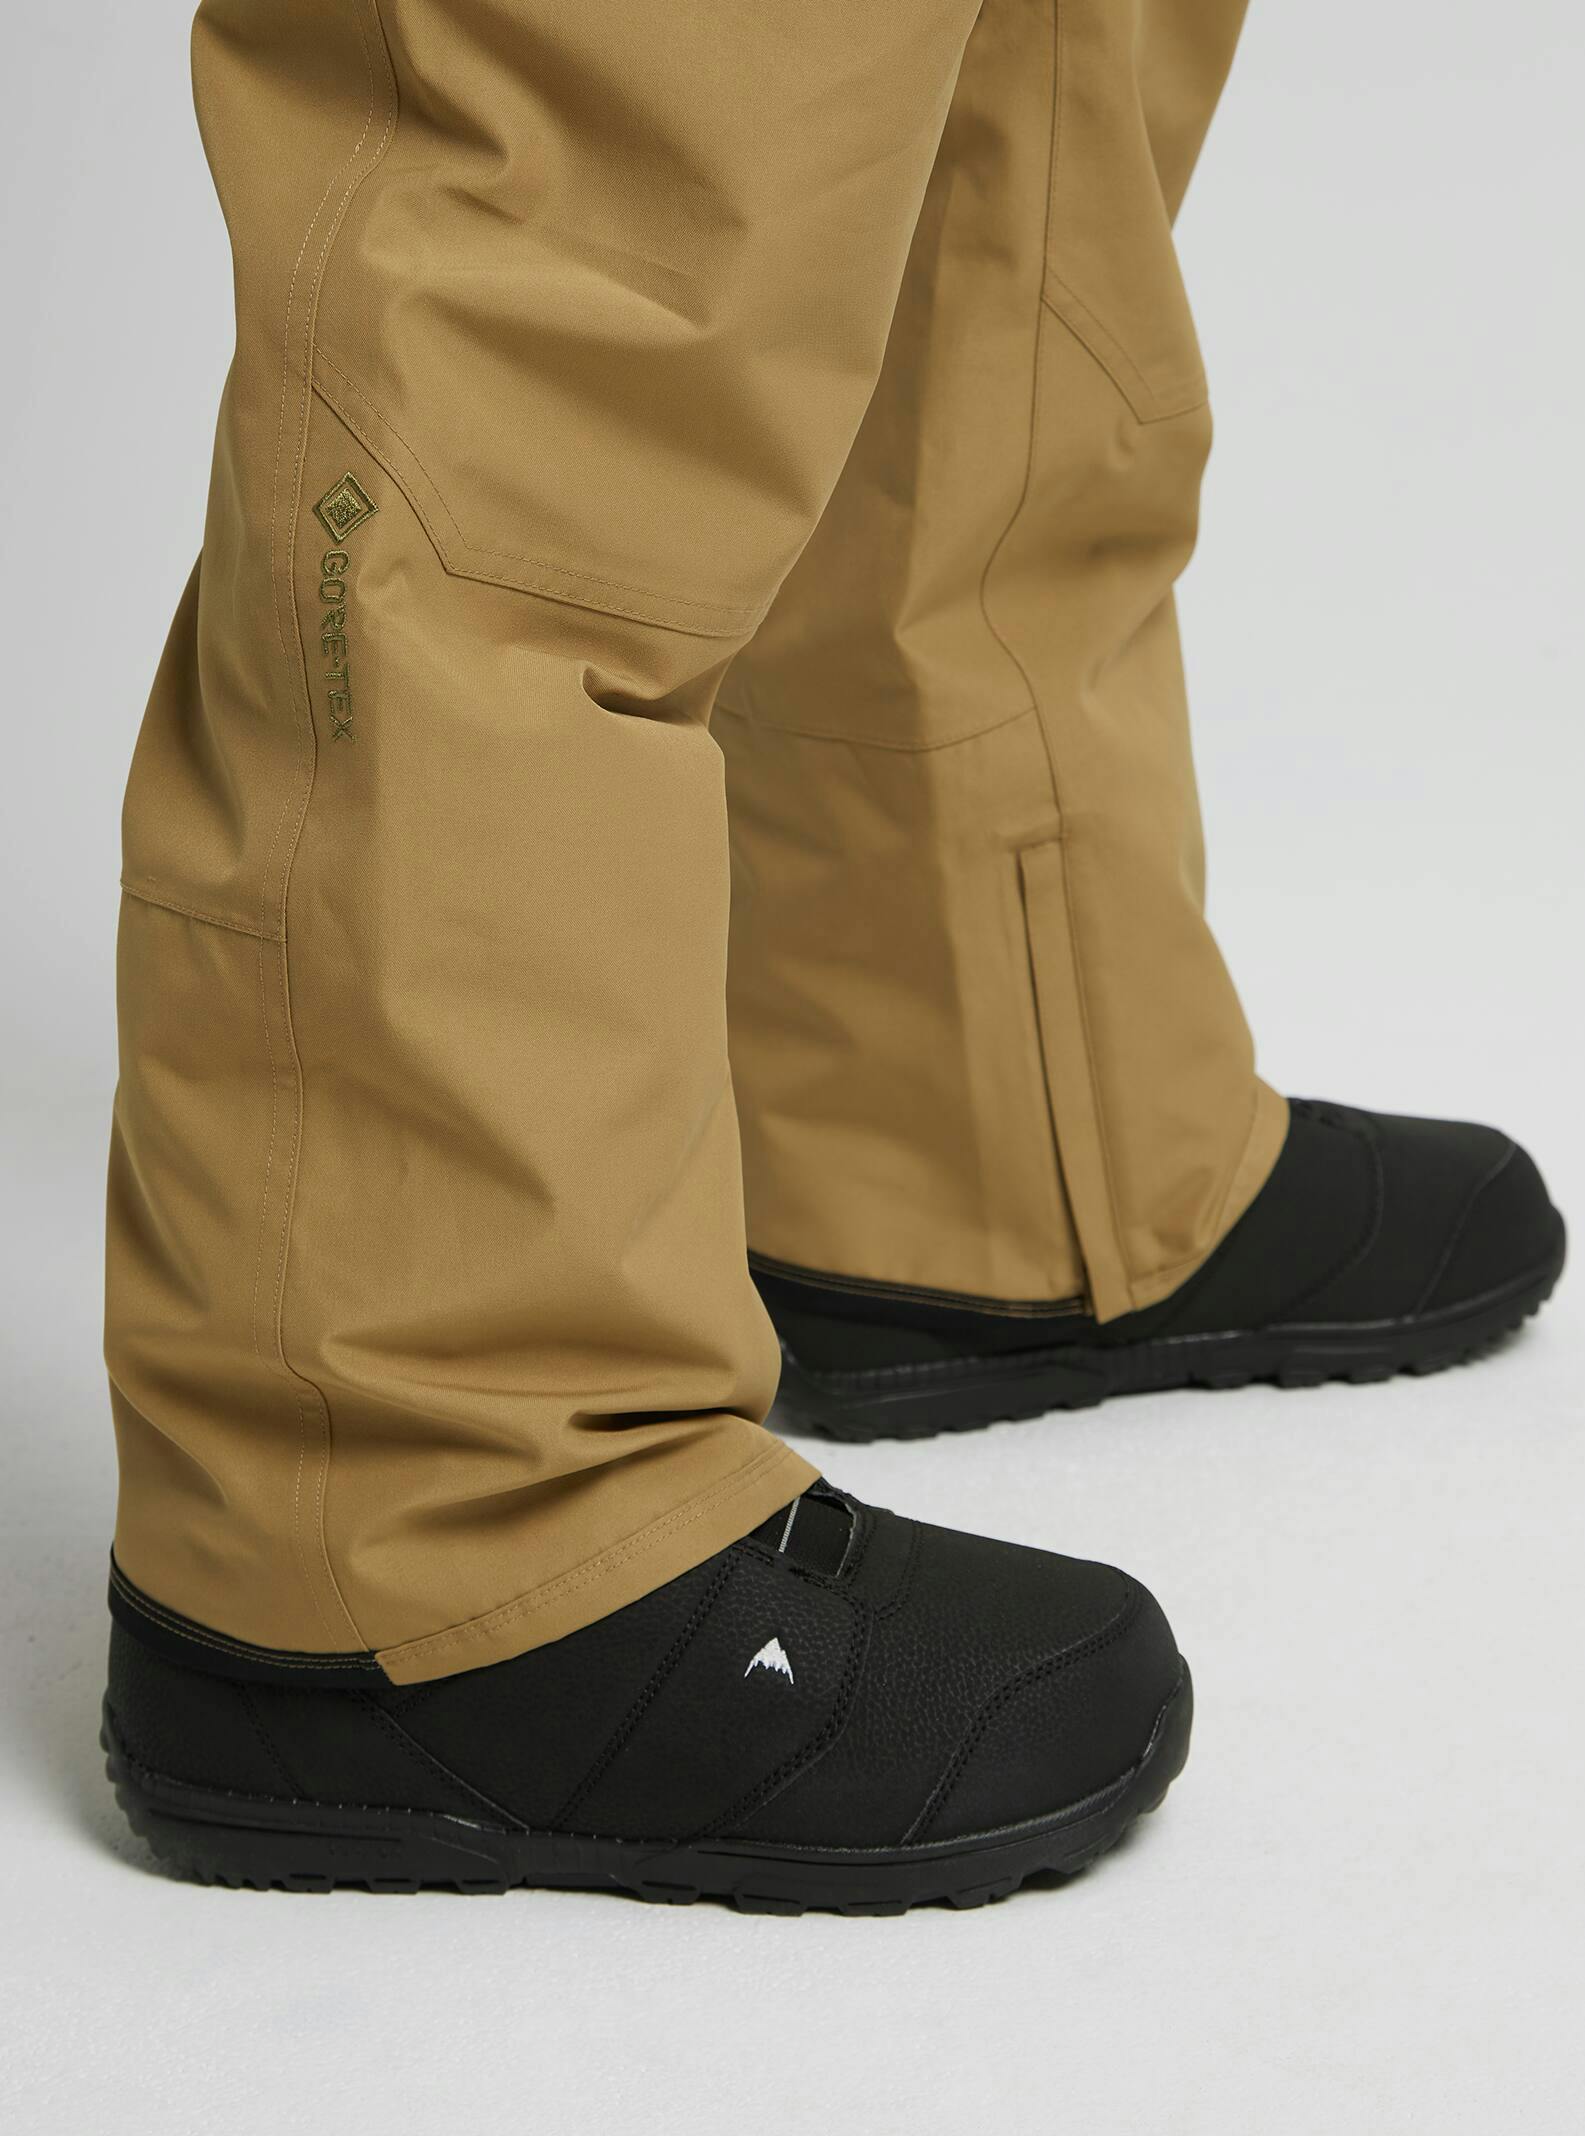 Burton Men's Reserve GORE-TEX 2L Bib Pants